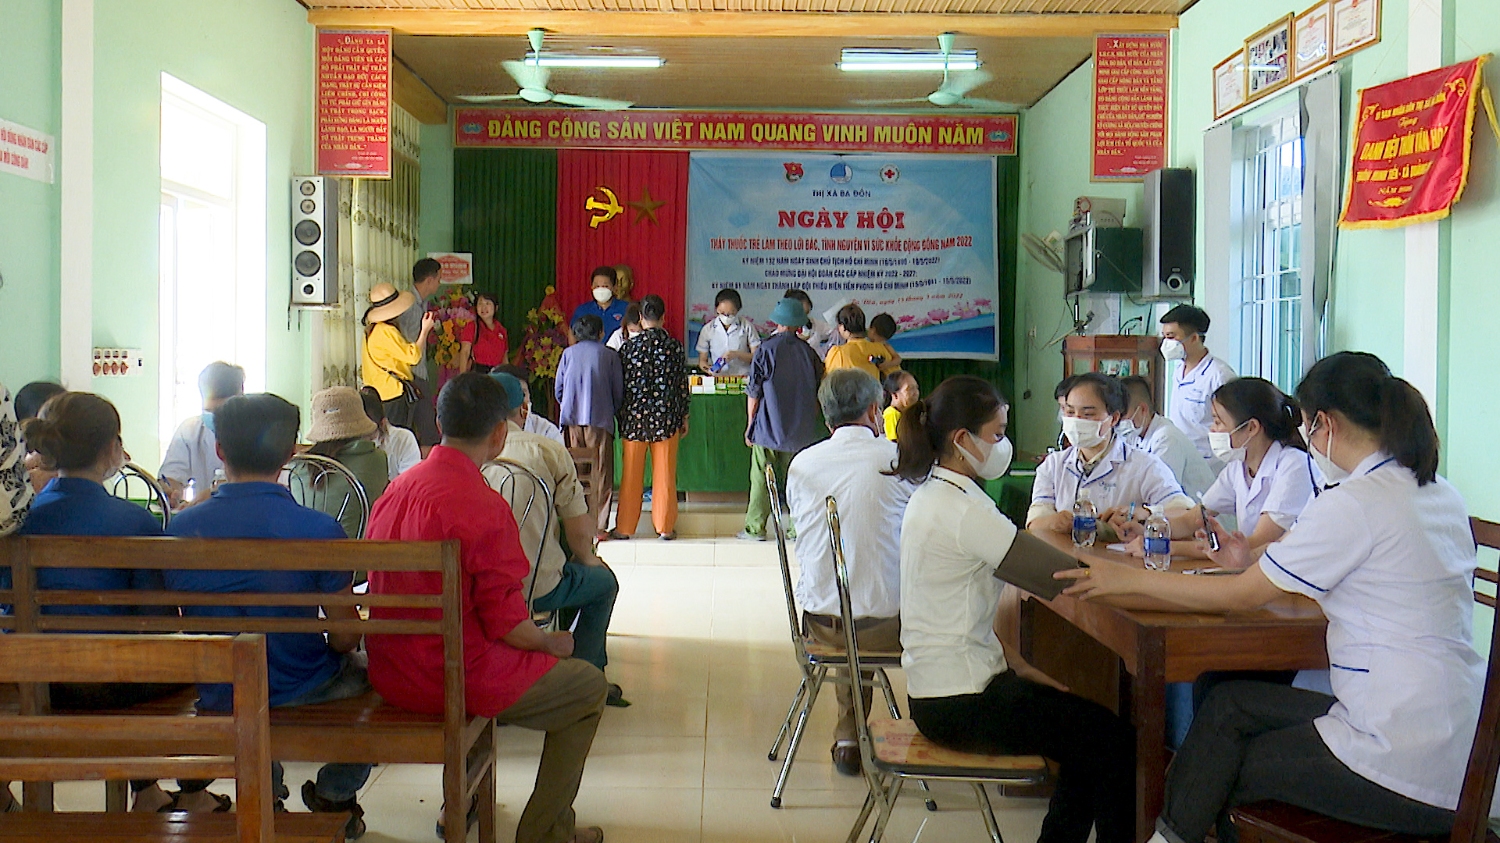 Ngày hội thu hút gần 200 người dân thôn Minh Tiến tham gia khám bệnh.